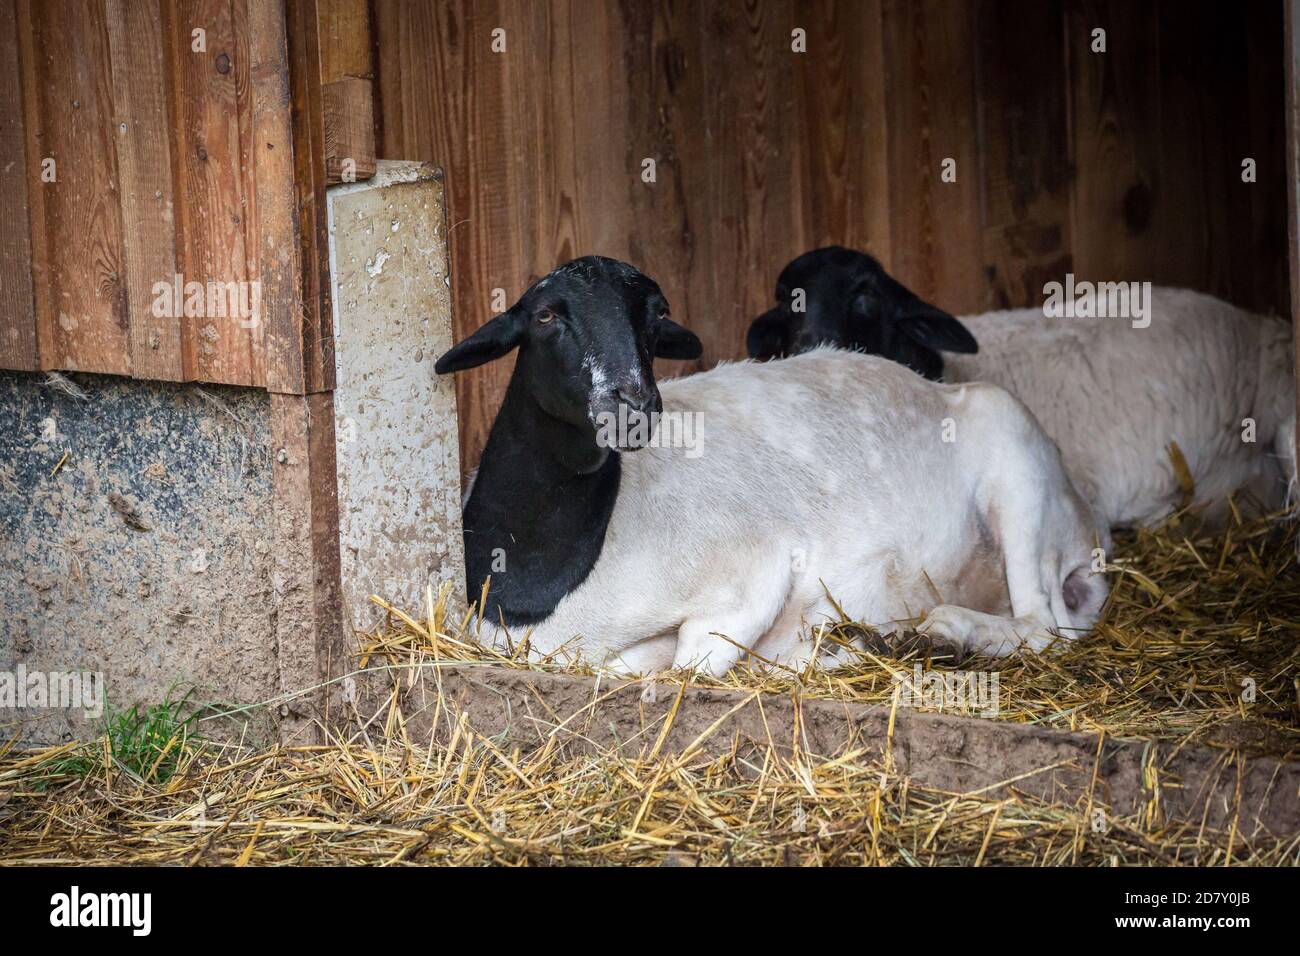 'Somali Fett-Schwanz Schafe' (Somali Fettschwanzschaf) Ist eine afrikanische Schafrasse mit weißem Körper und schwarz Kopf Stockfoto